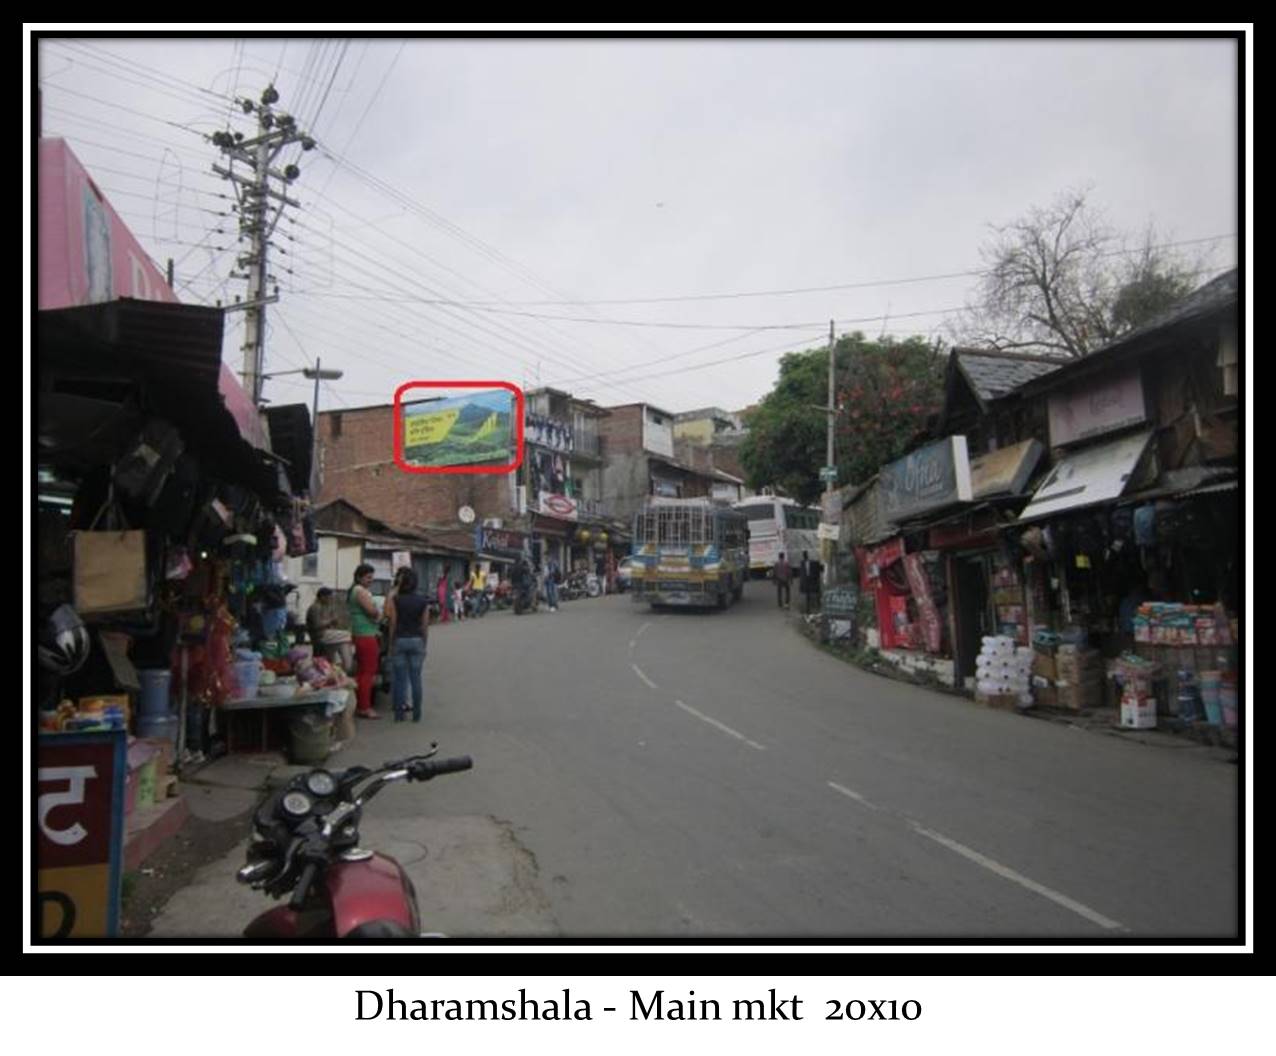 Main Market, Dharamshala